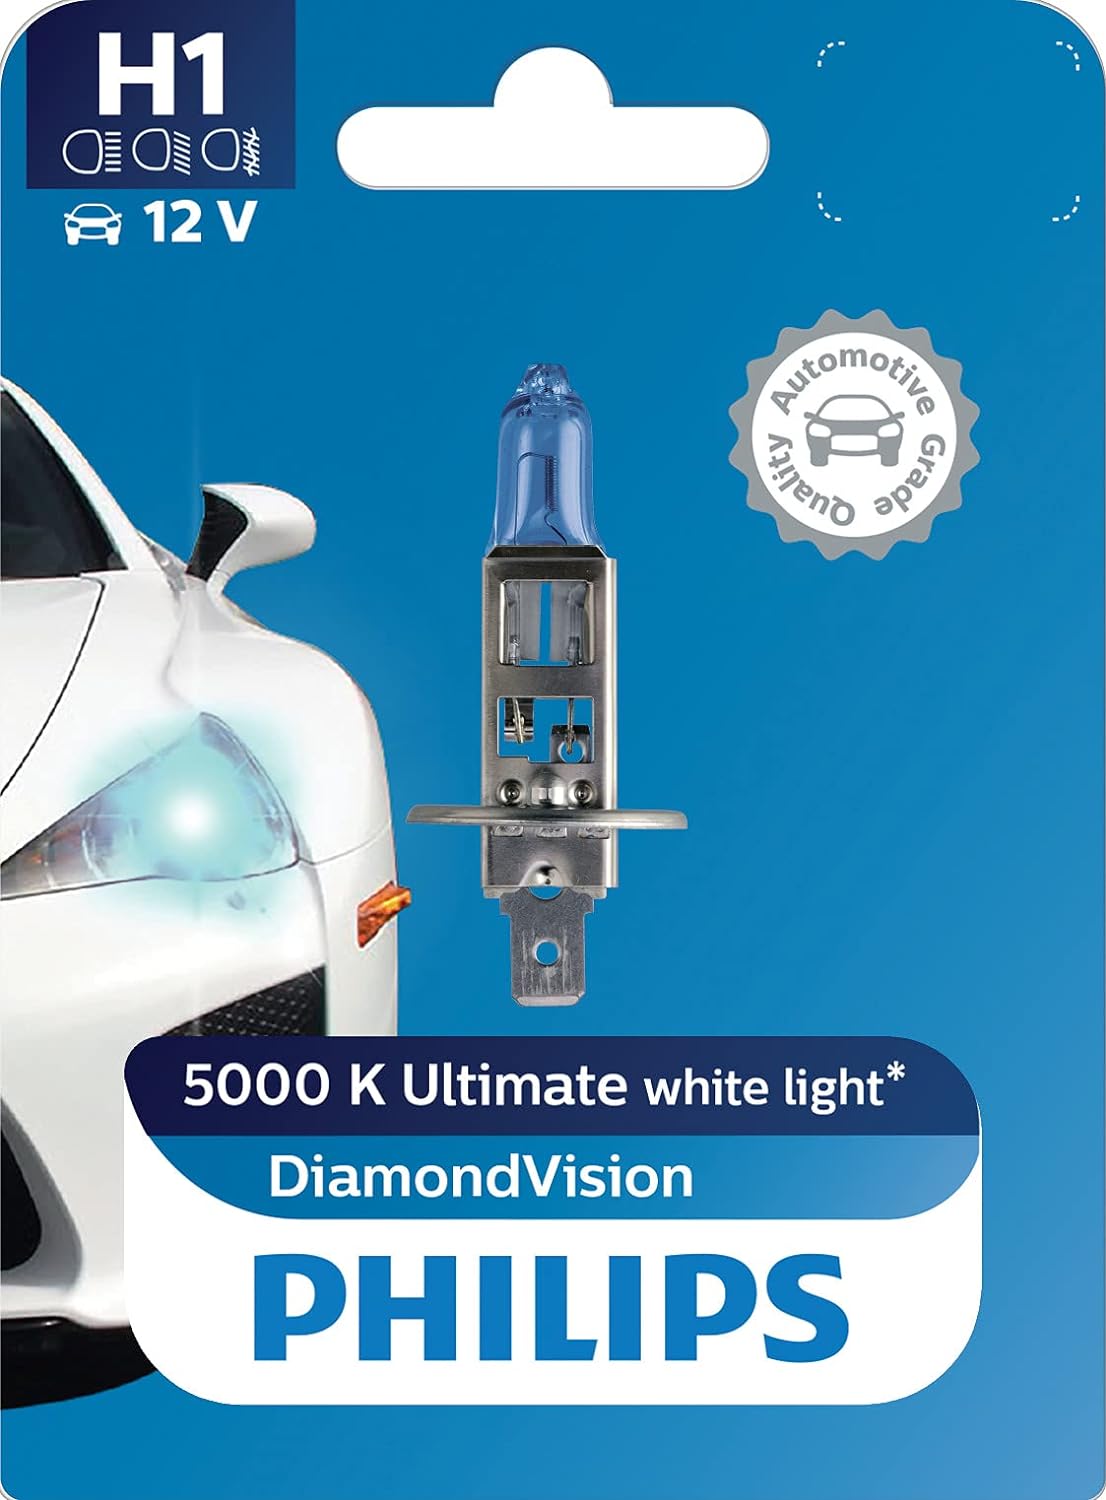 Philips H1 12V Halogen Light For Car, Headlight bulb , Pack of 1